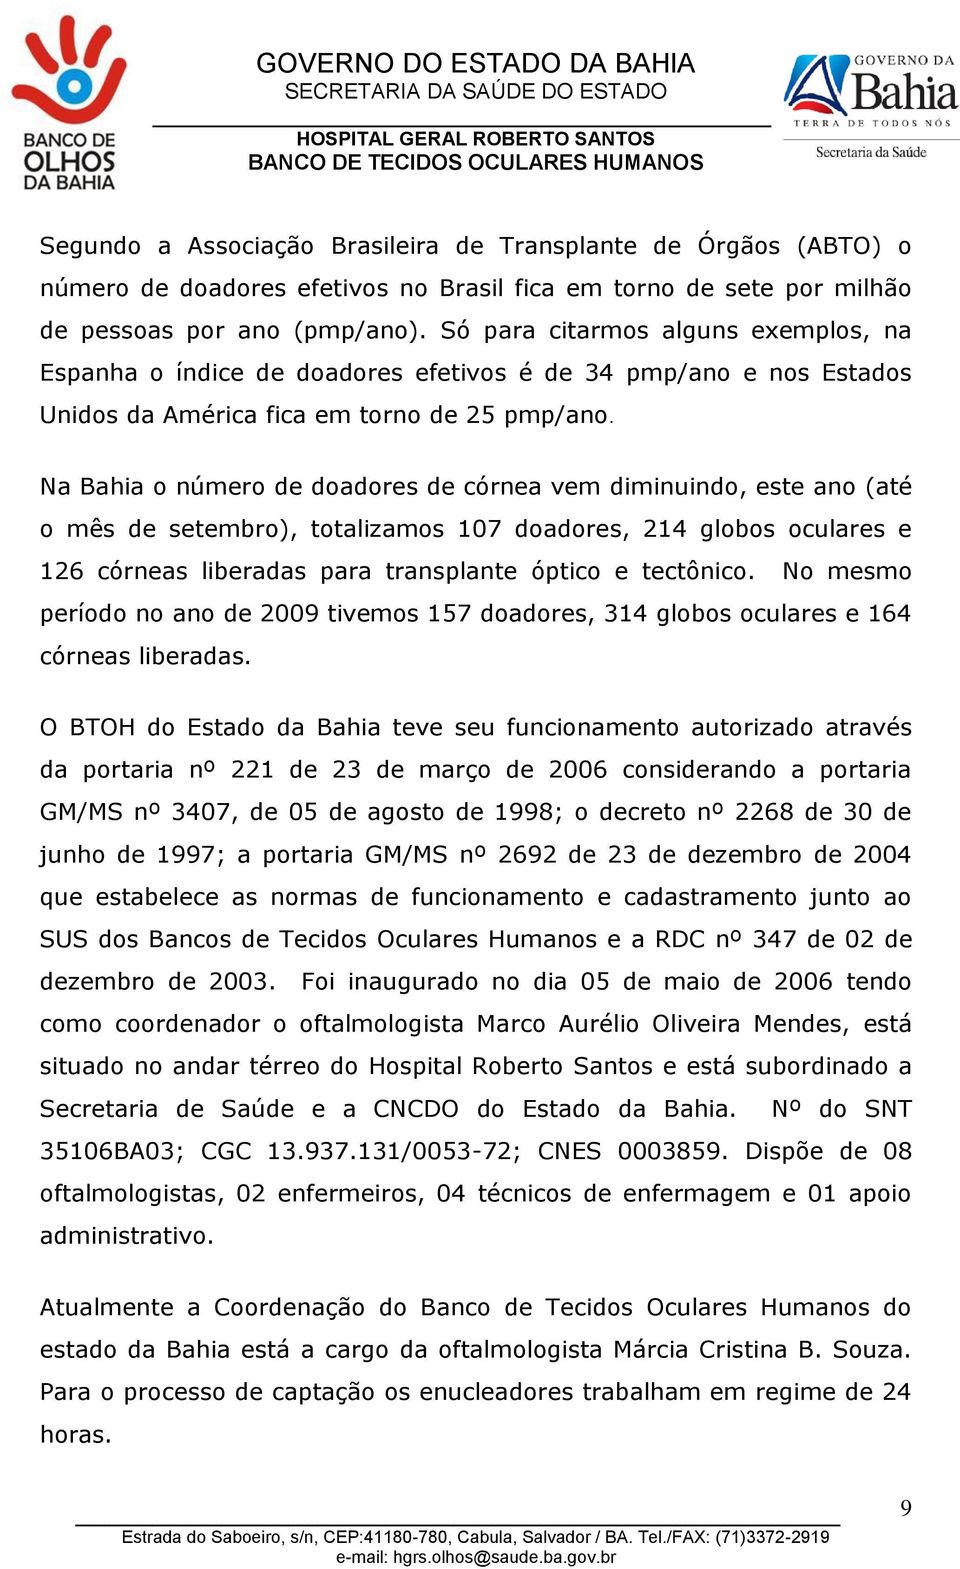 Na Bahia o número de doadores de córnea vem diminuindo, este ano (até o mês de setembro), totalizamos 107 doadores, 214 globos oculares e 126 córneas liberadas para transplante óptico e tectônico.